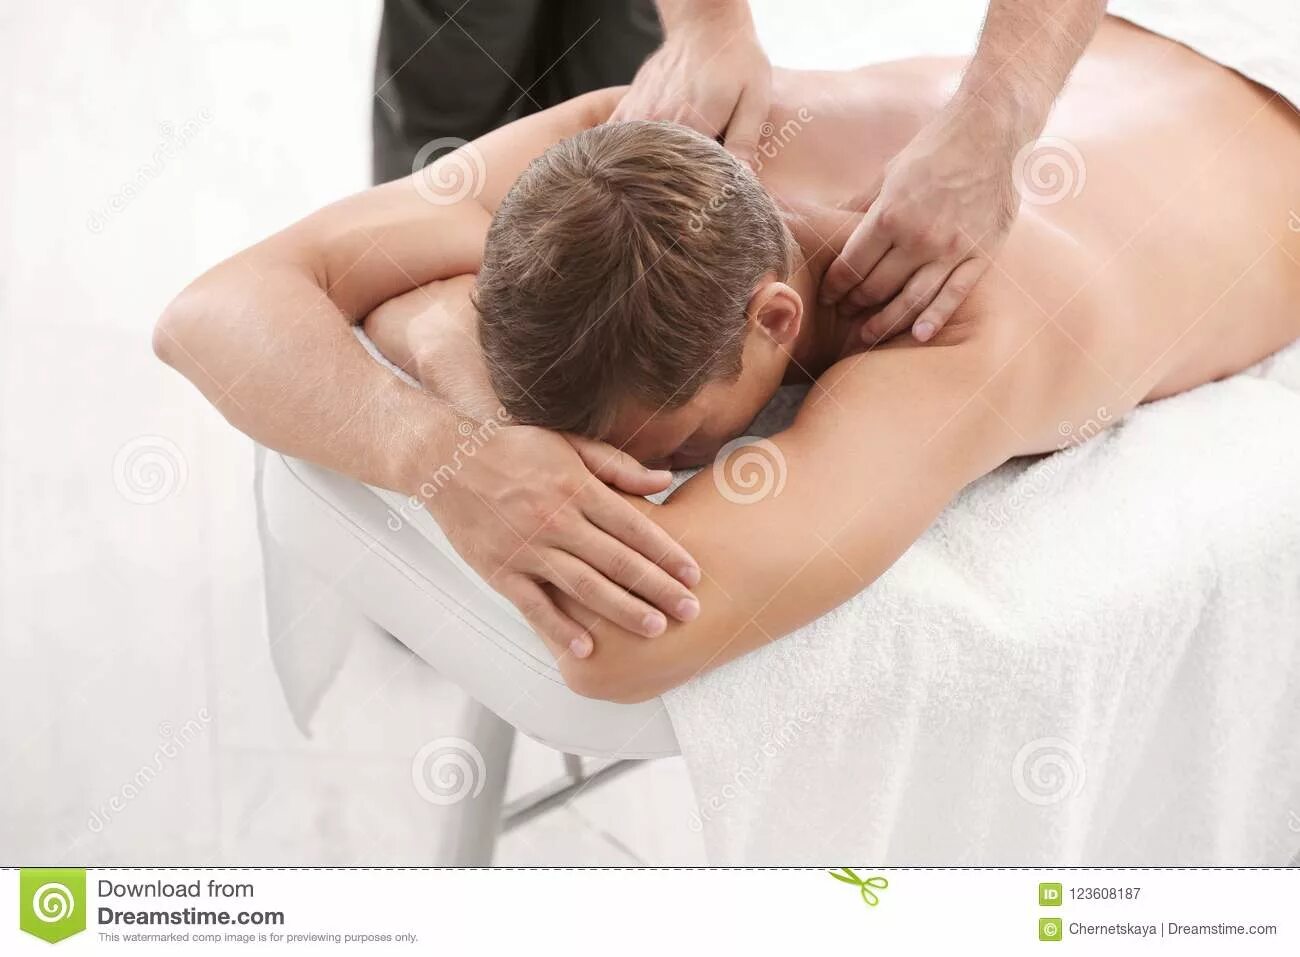 Ручной расслабления мужчина. Массаж спины расслабляющий для мужчин. Массаж для спины мужчине расслабляющий мужчин. Массаж спины расслабляющий для мужчин в домашних условиях. Receive back